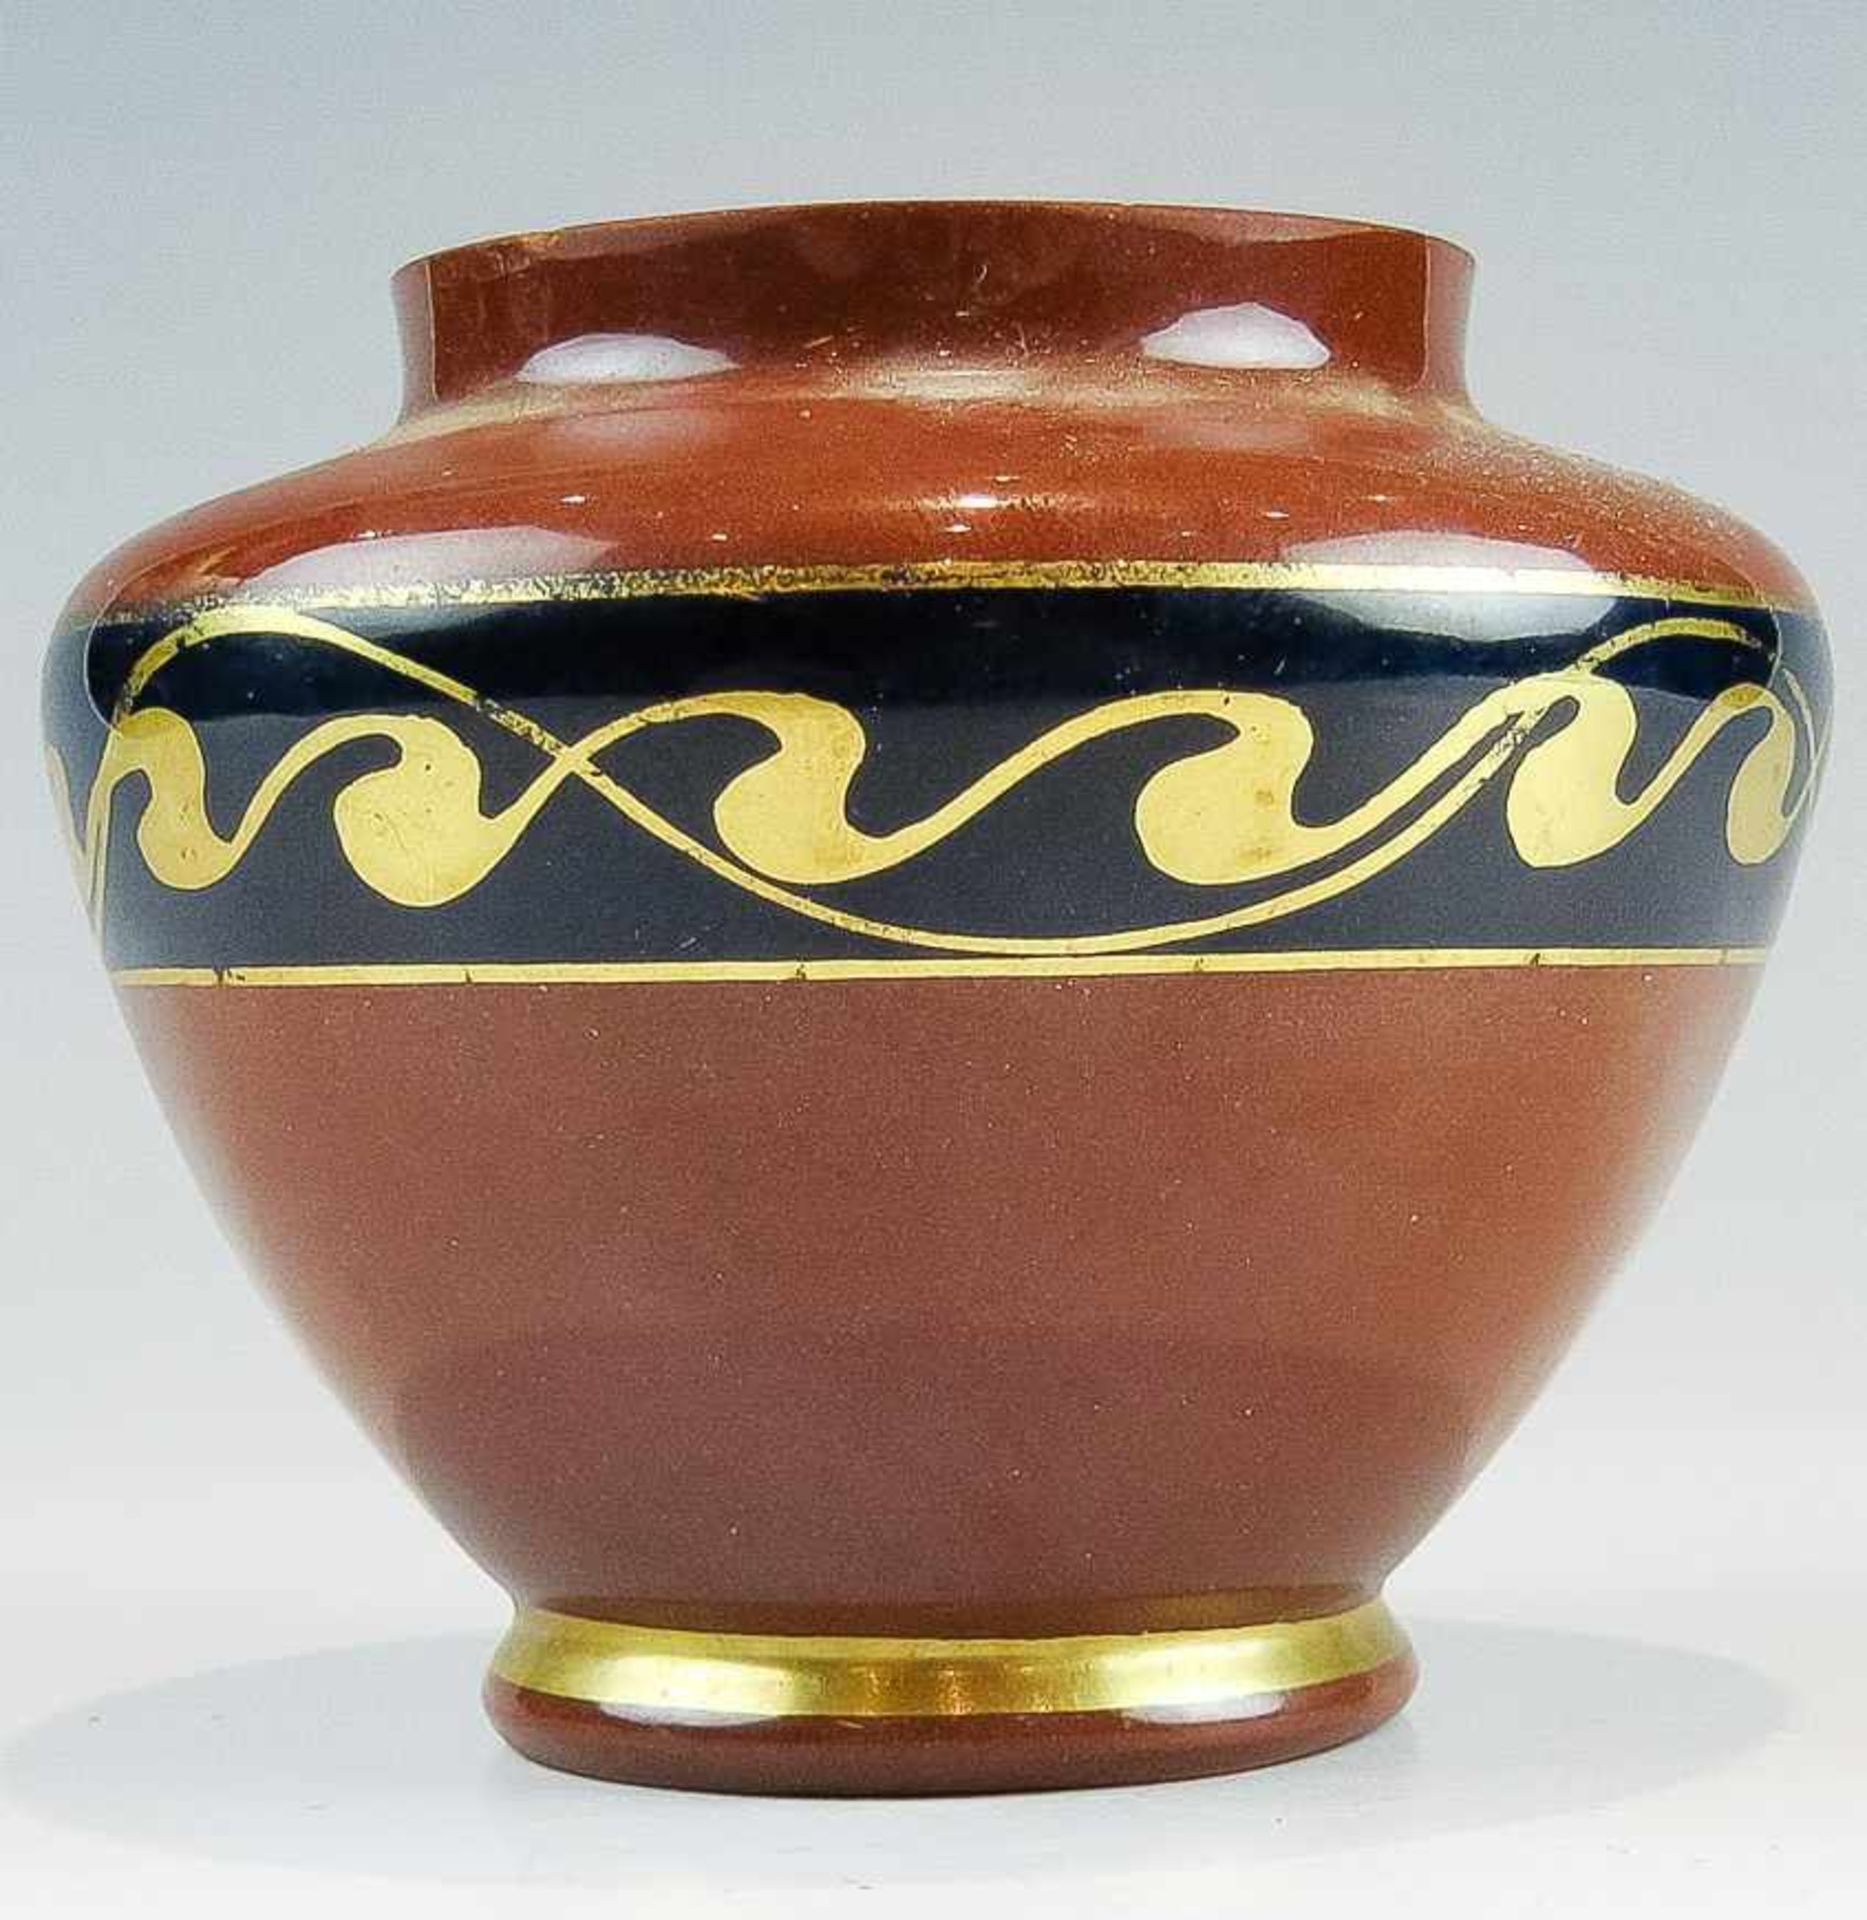 Kl. Vase. Cadinen.Keramik. Ziegelrot mit goldener Laufender-Hund-Bordüre auf kobaltblauem Grund.